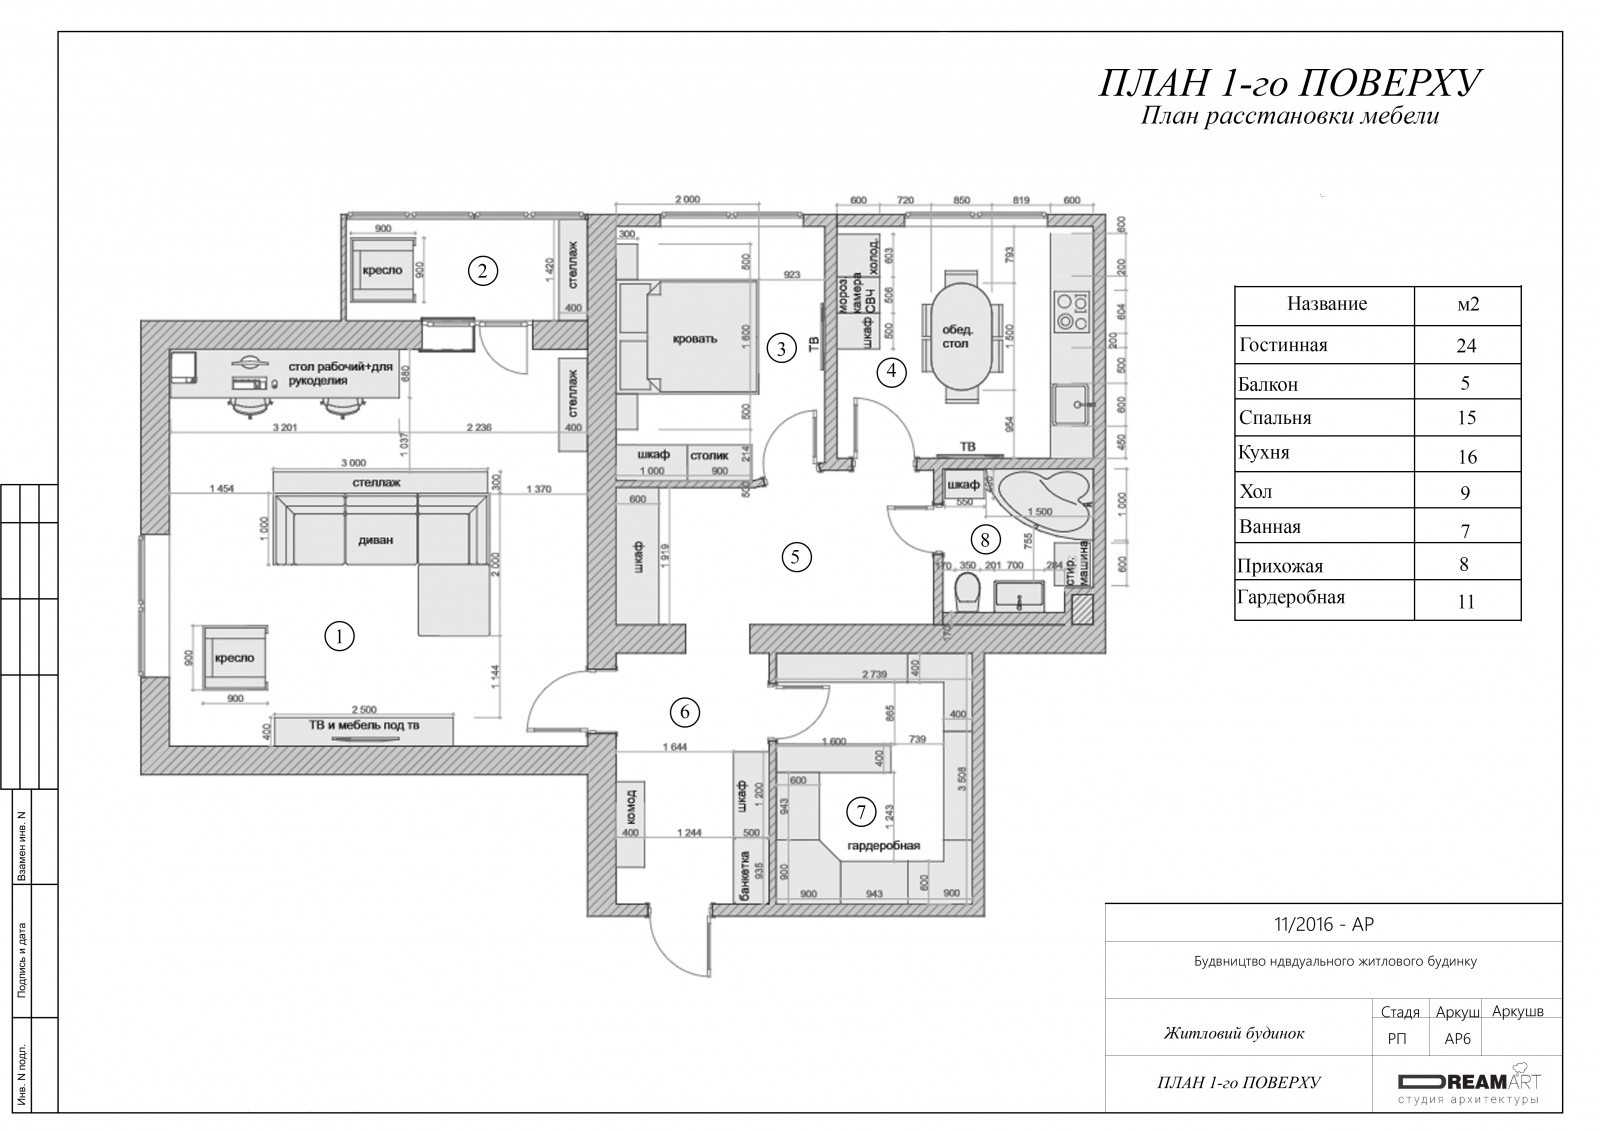 Планировка 2х комнатной квартиры — современные решения идеального зонирования (65 фото)